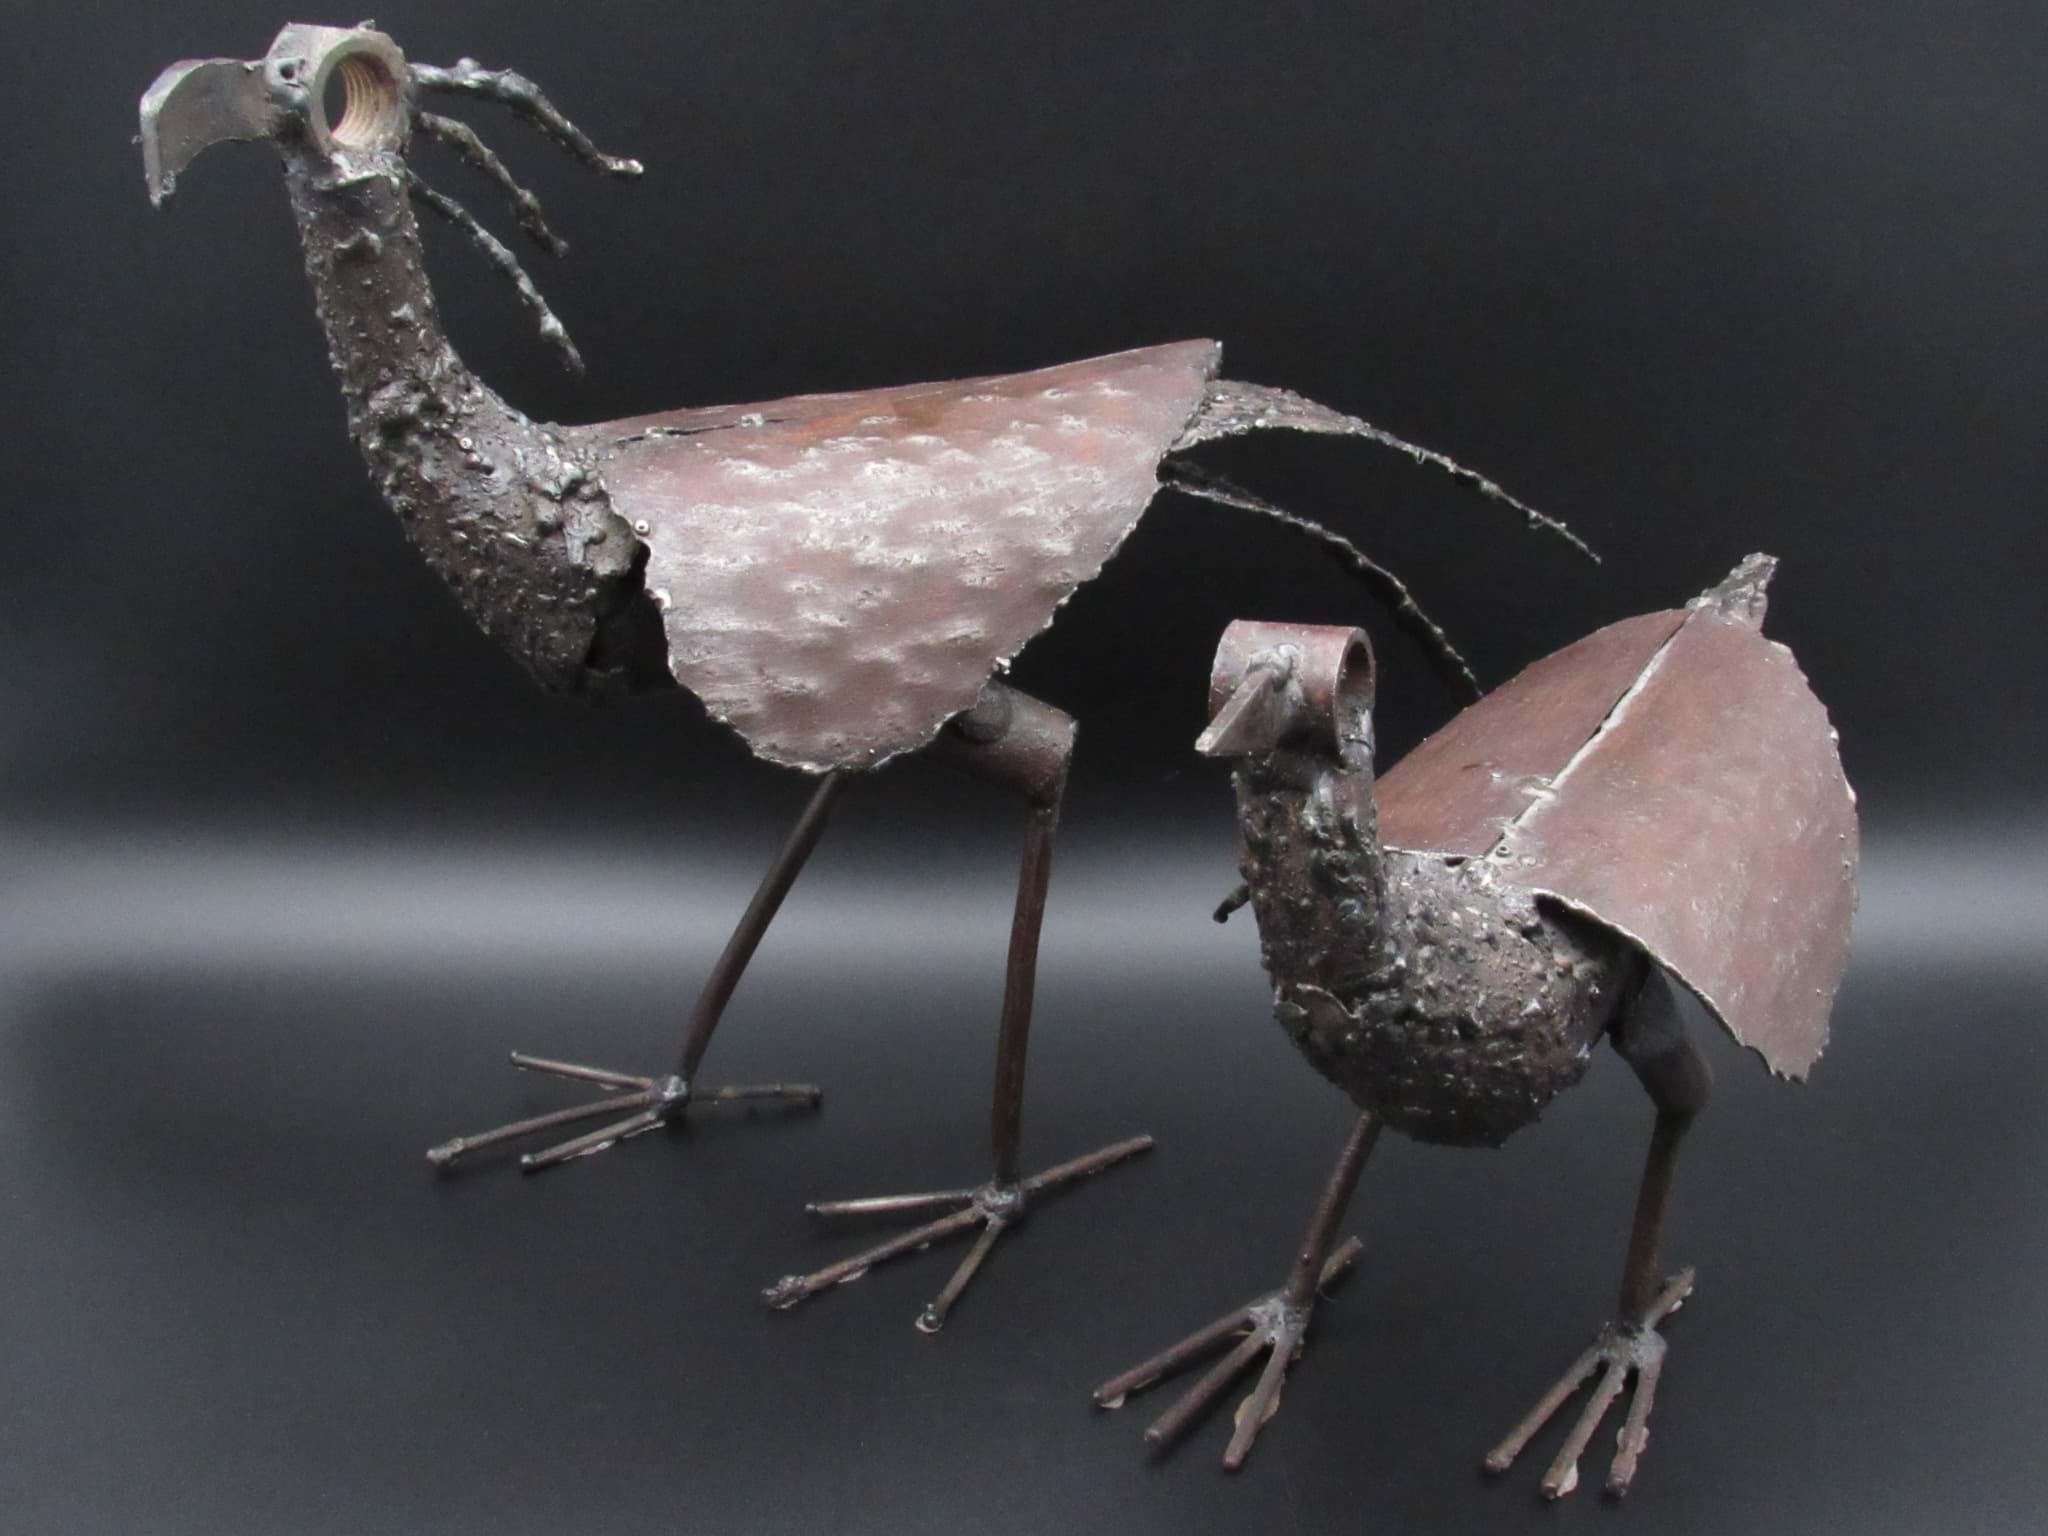 Bild av Fantastisches & Faszinierendes Vogelpaar, Schrottkunst Vögel
